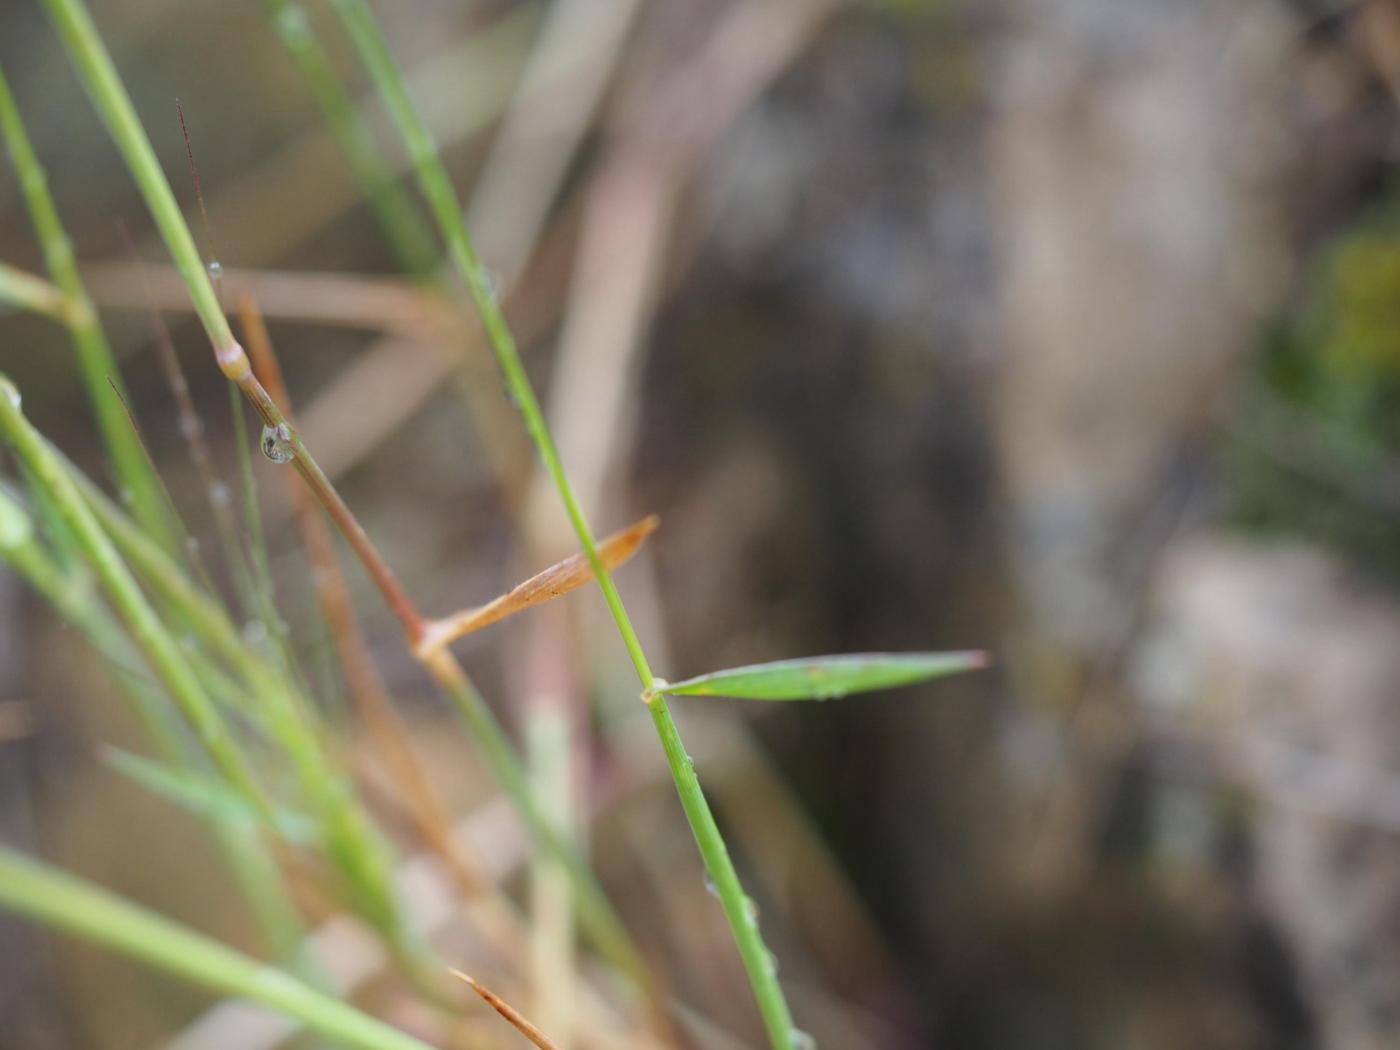 Goat grass, Barbed leaf